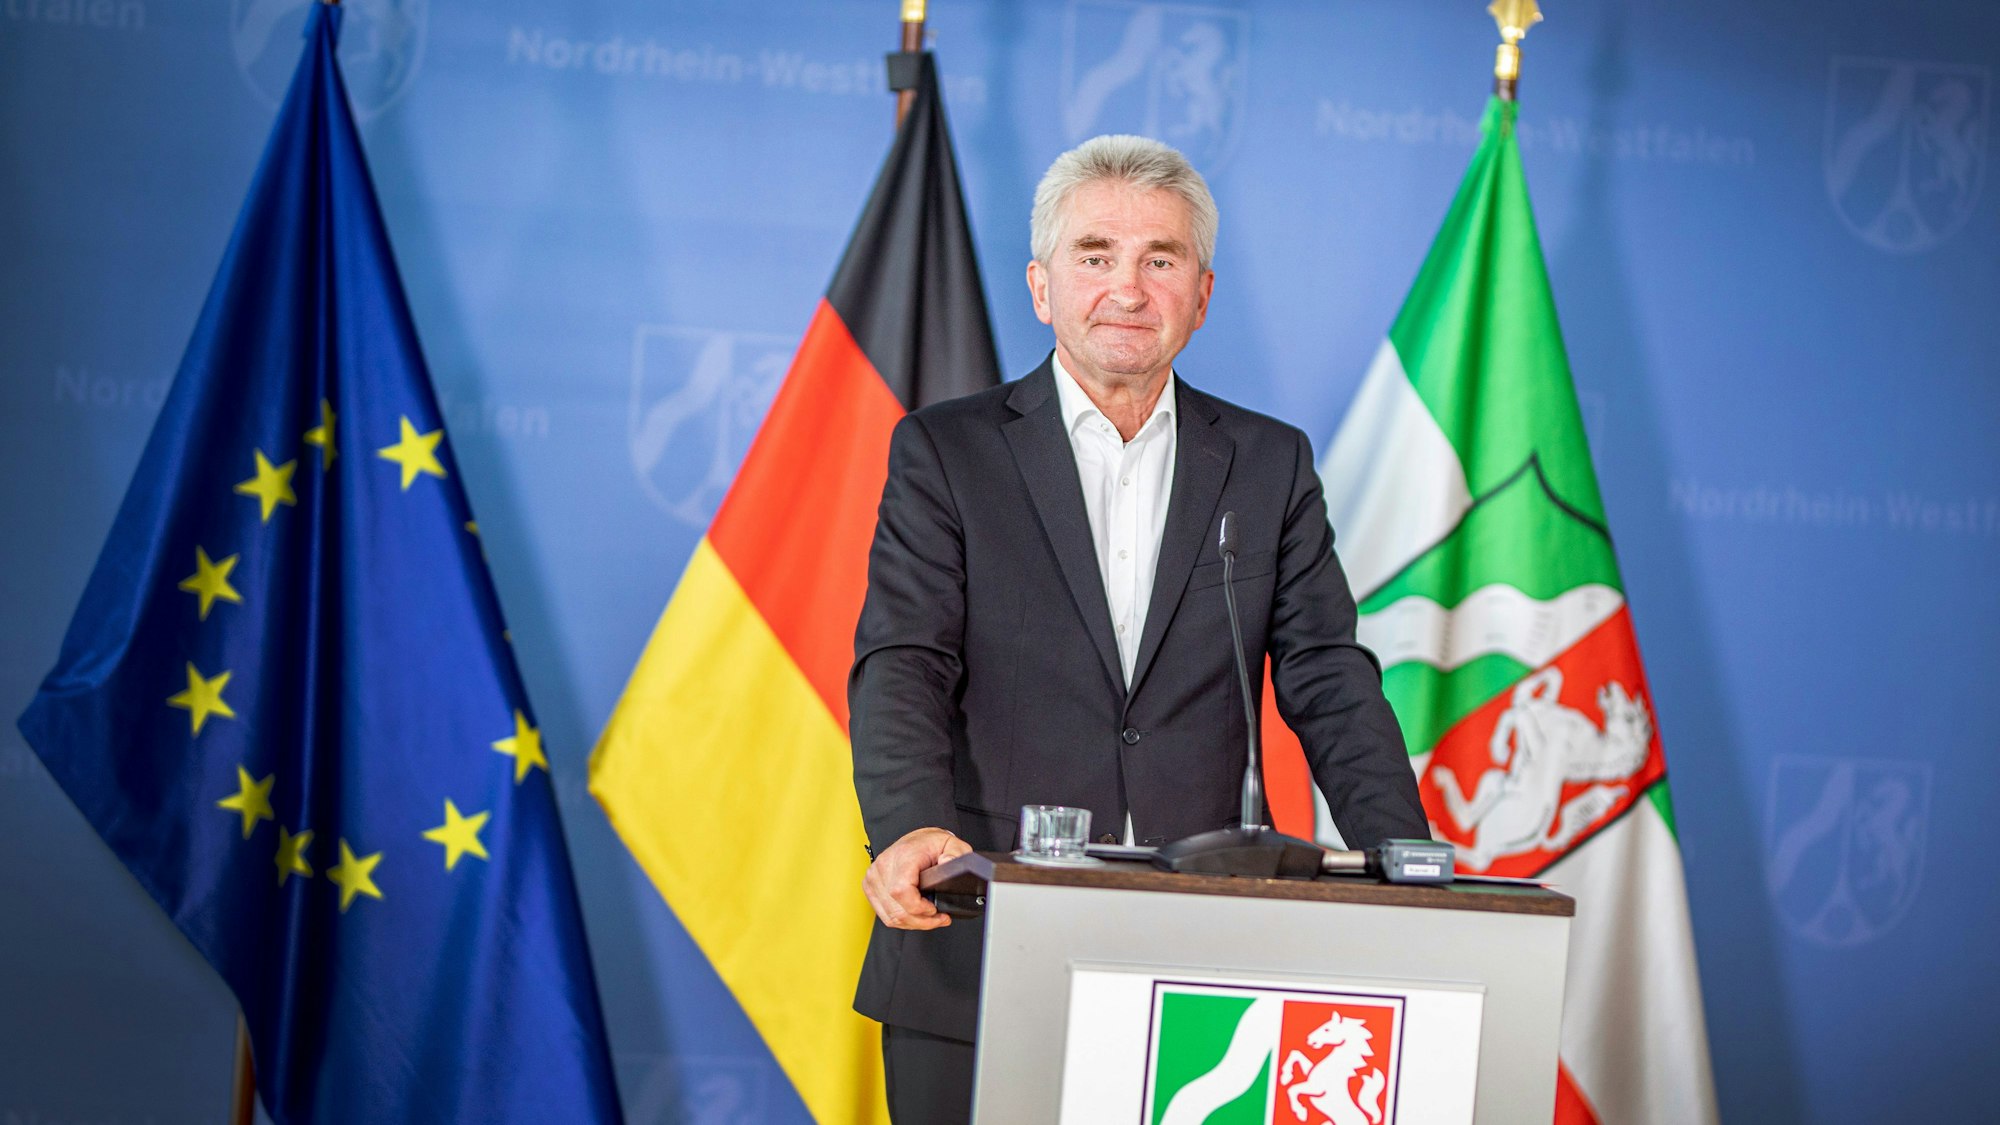 Andreas Pinkwart steht an einem Rednerpult mit dem Wappen Nordrhein-Westfalens. Hinter ihm steht eine Europa-, eine Deutschland- und eine NRW-Flagge.